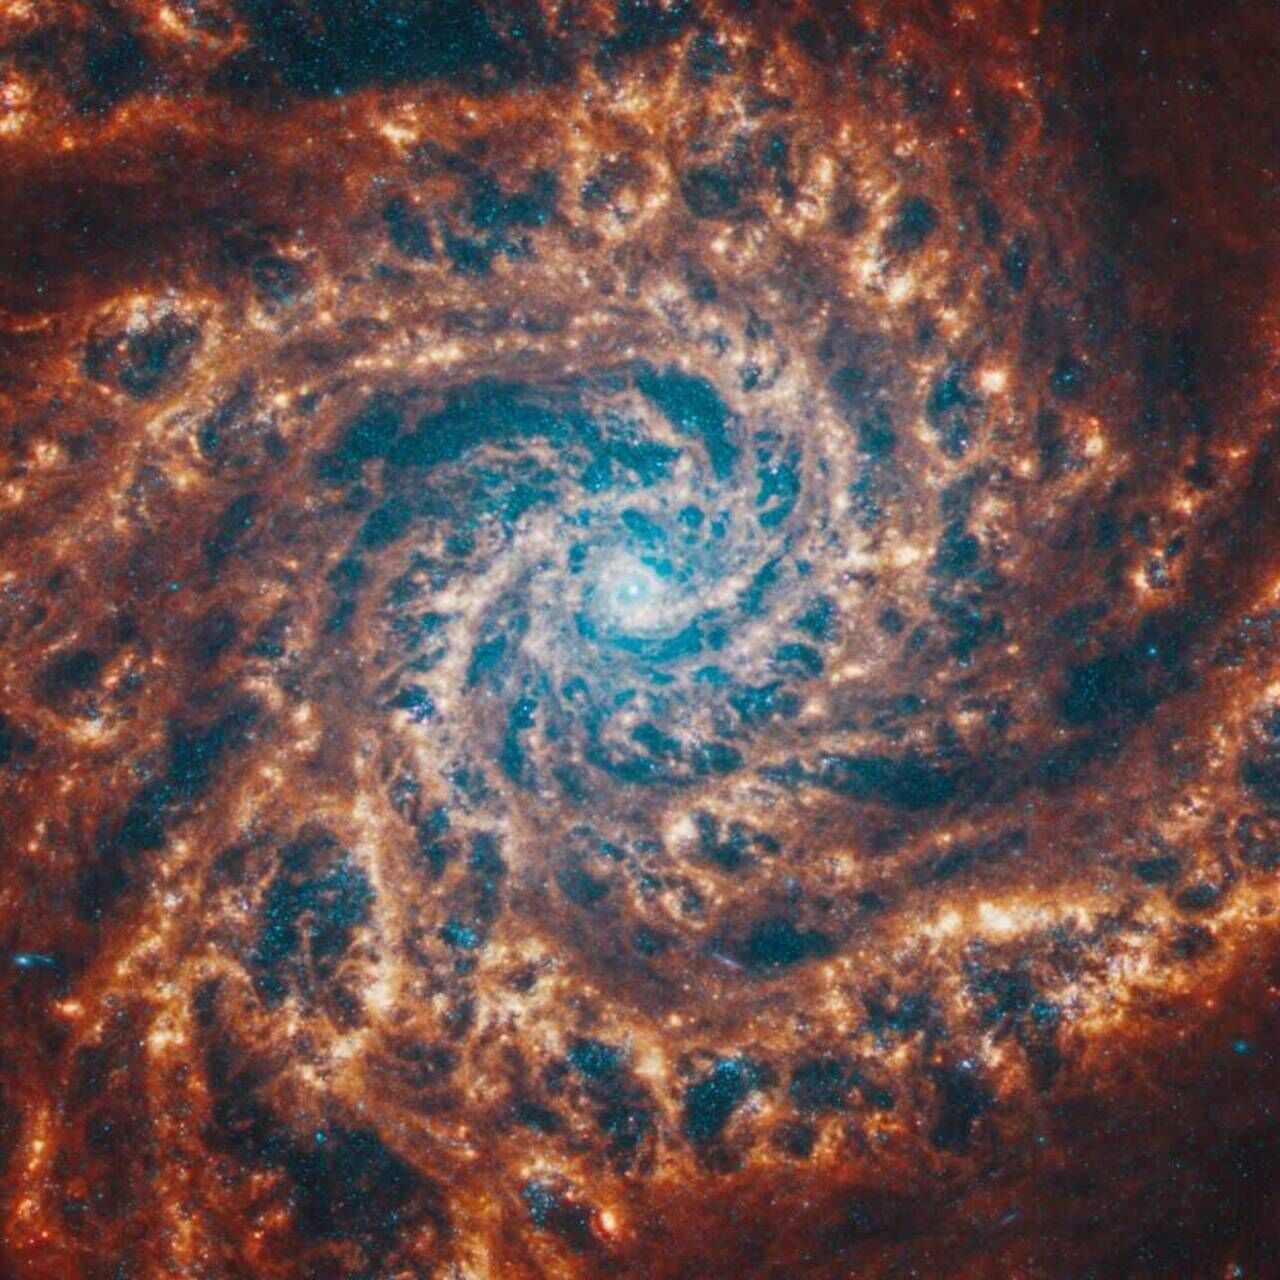 Master en systèmes spatiaux : une galaxie spirale imagée par le télescope James Webb